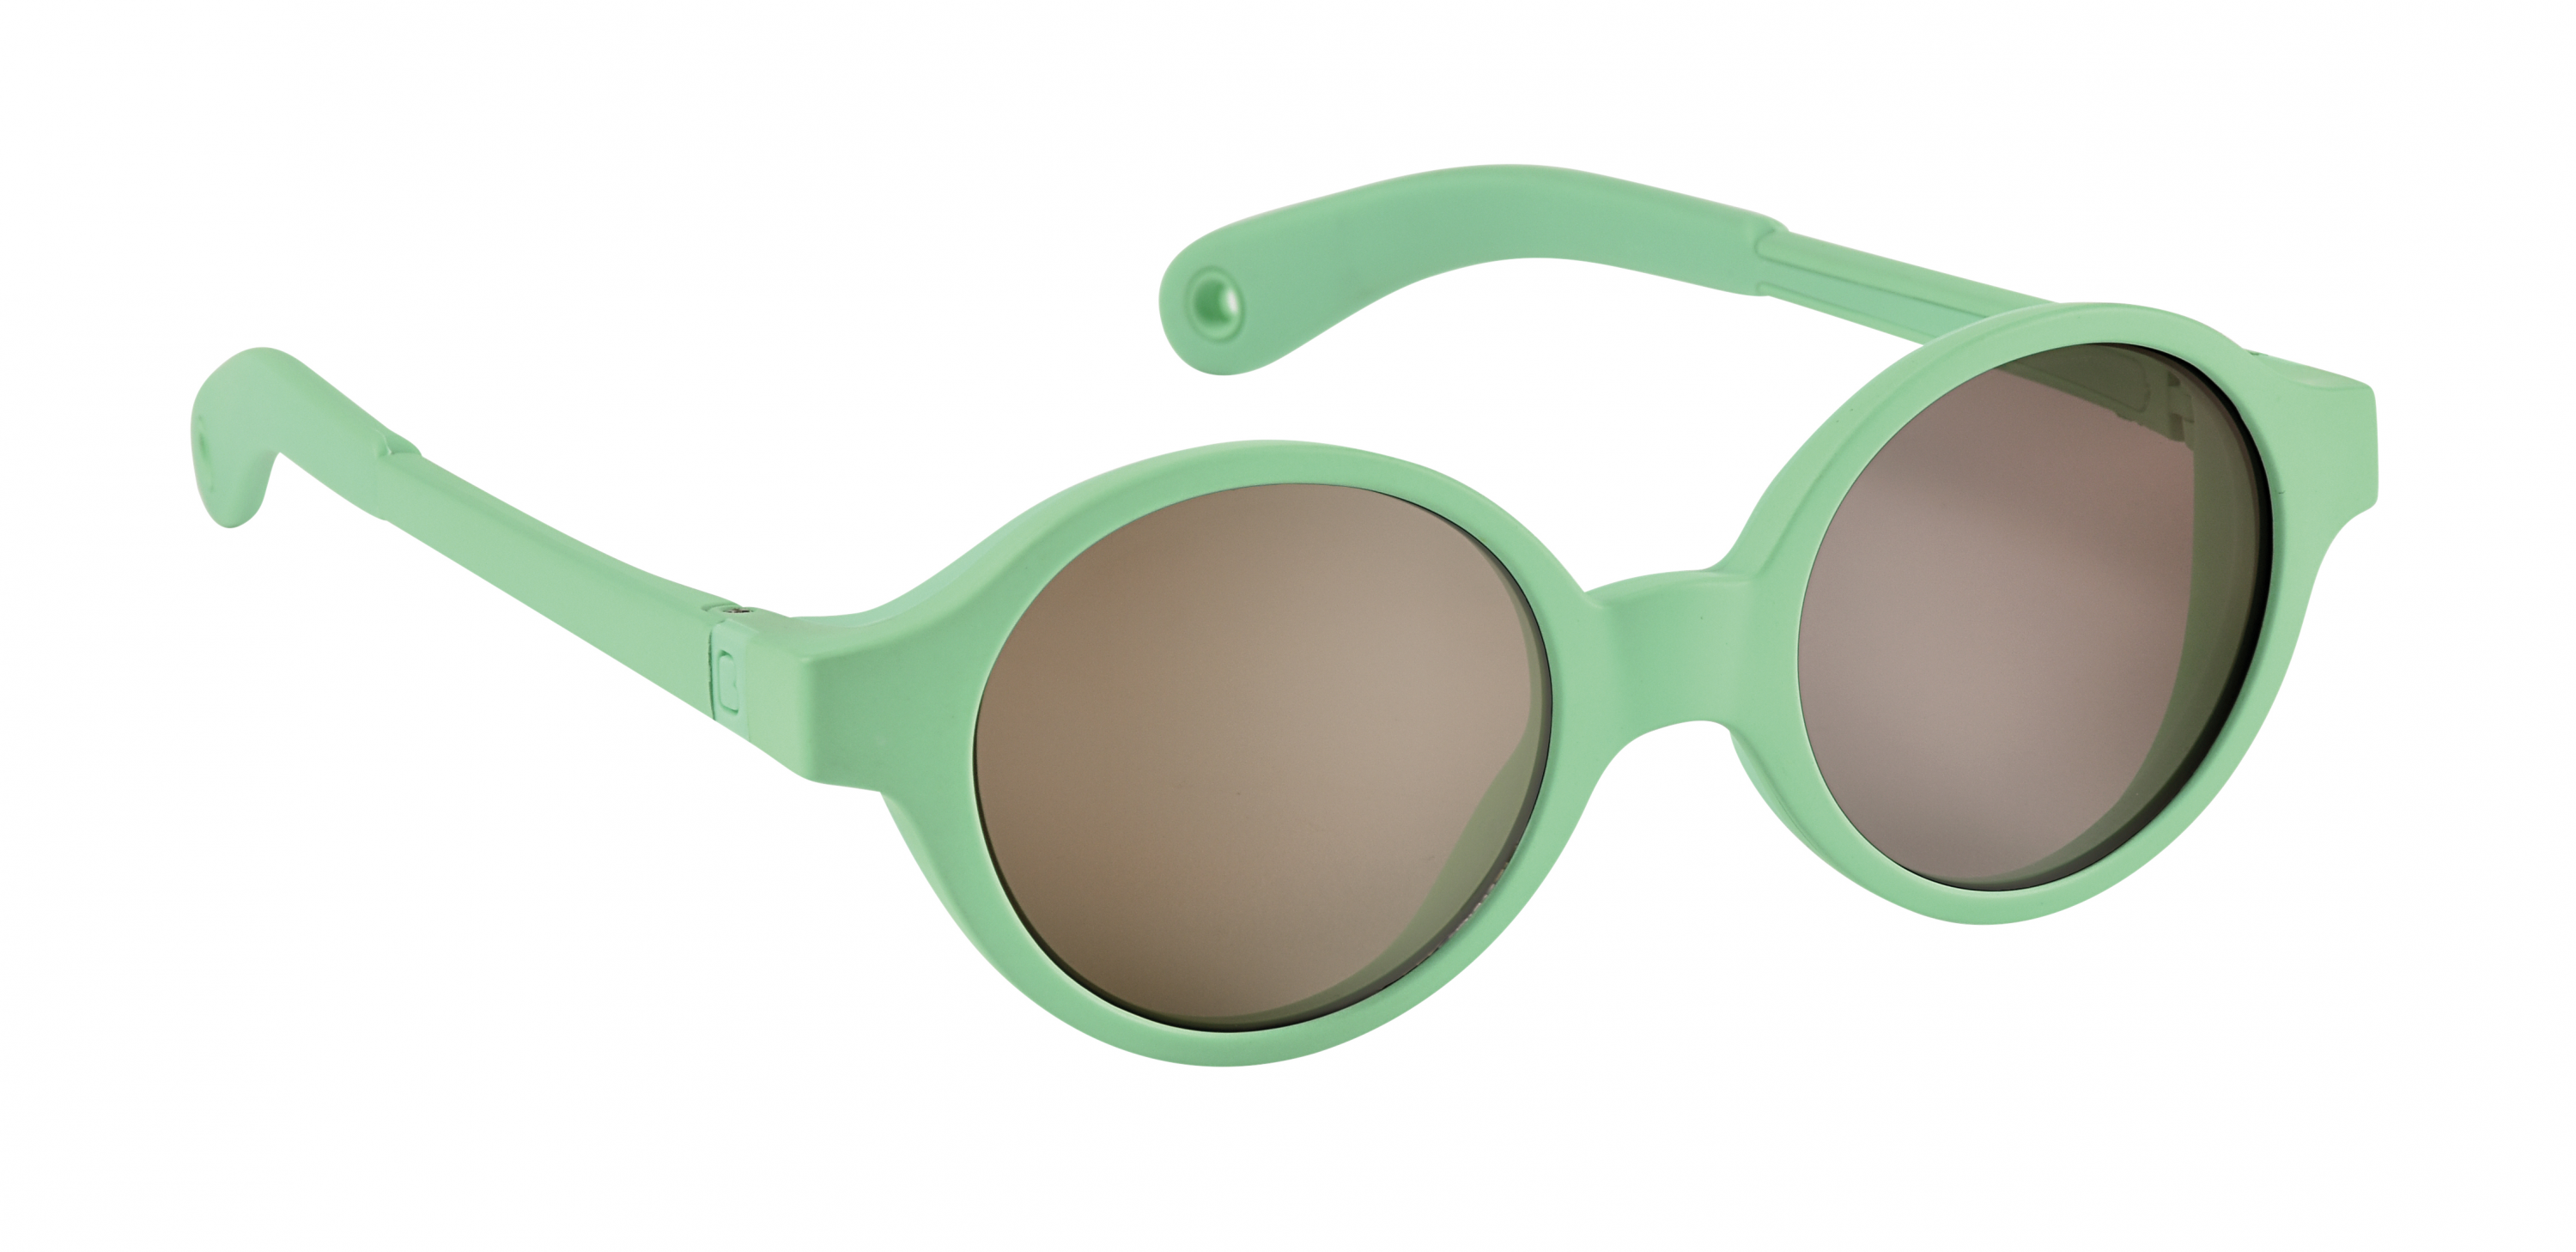 Sluneční brýle Joy 9-24m Neon Green